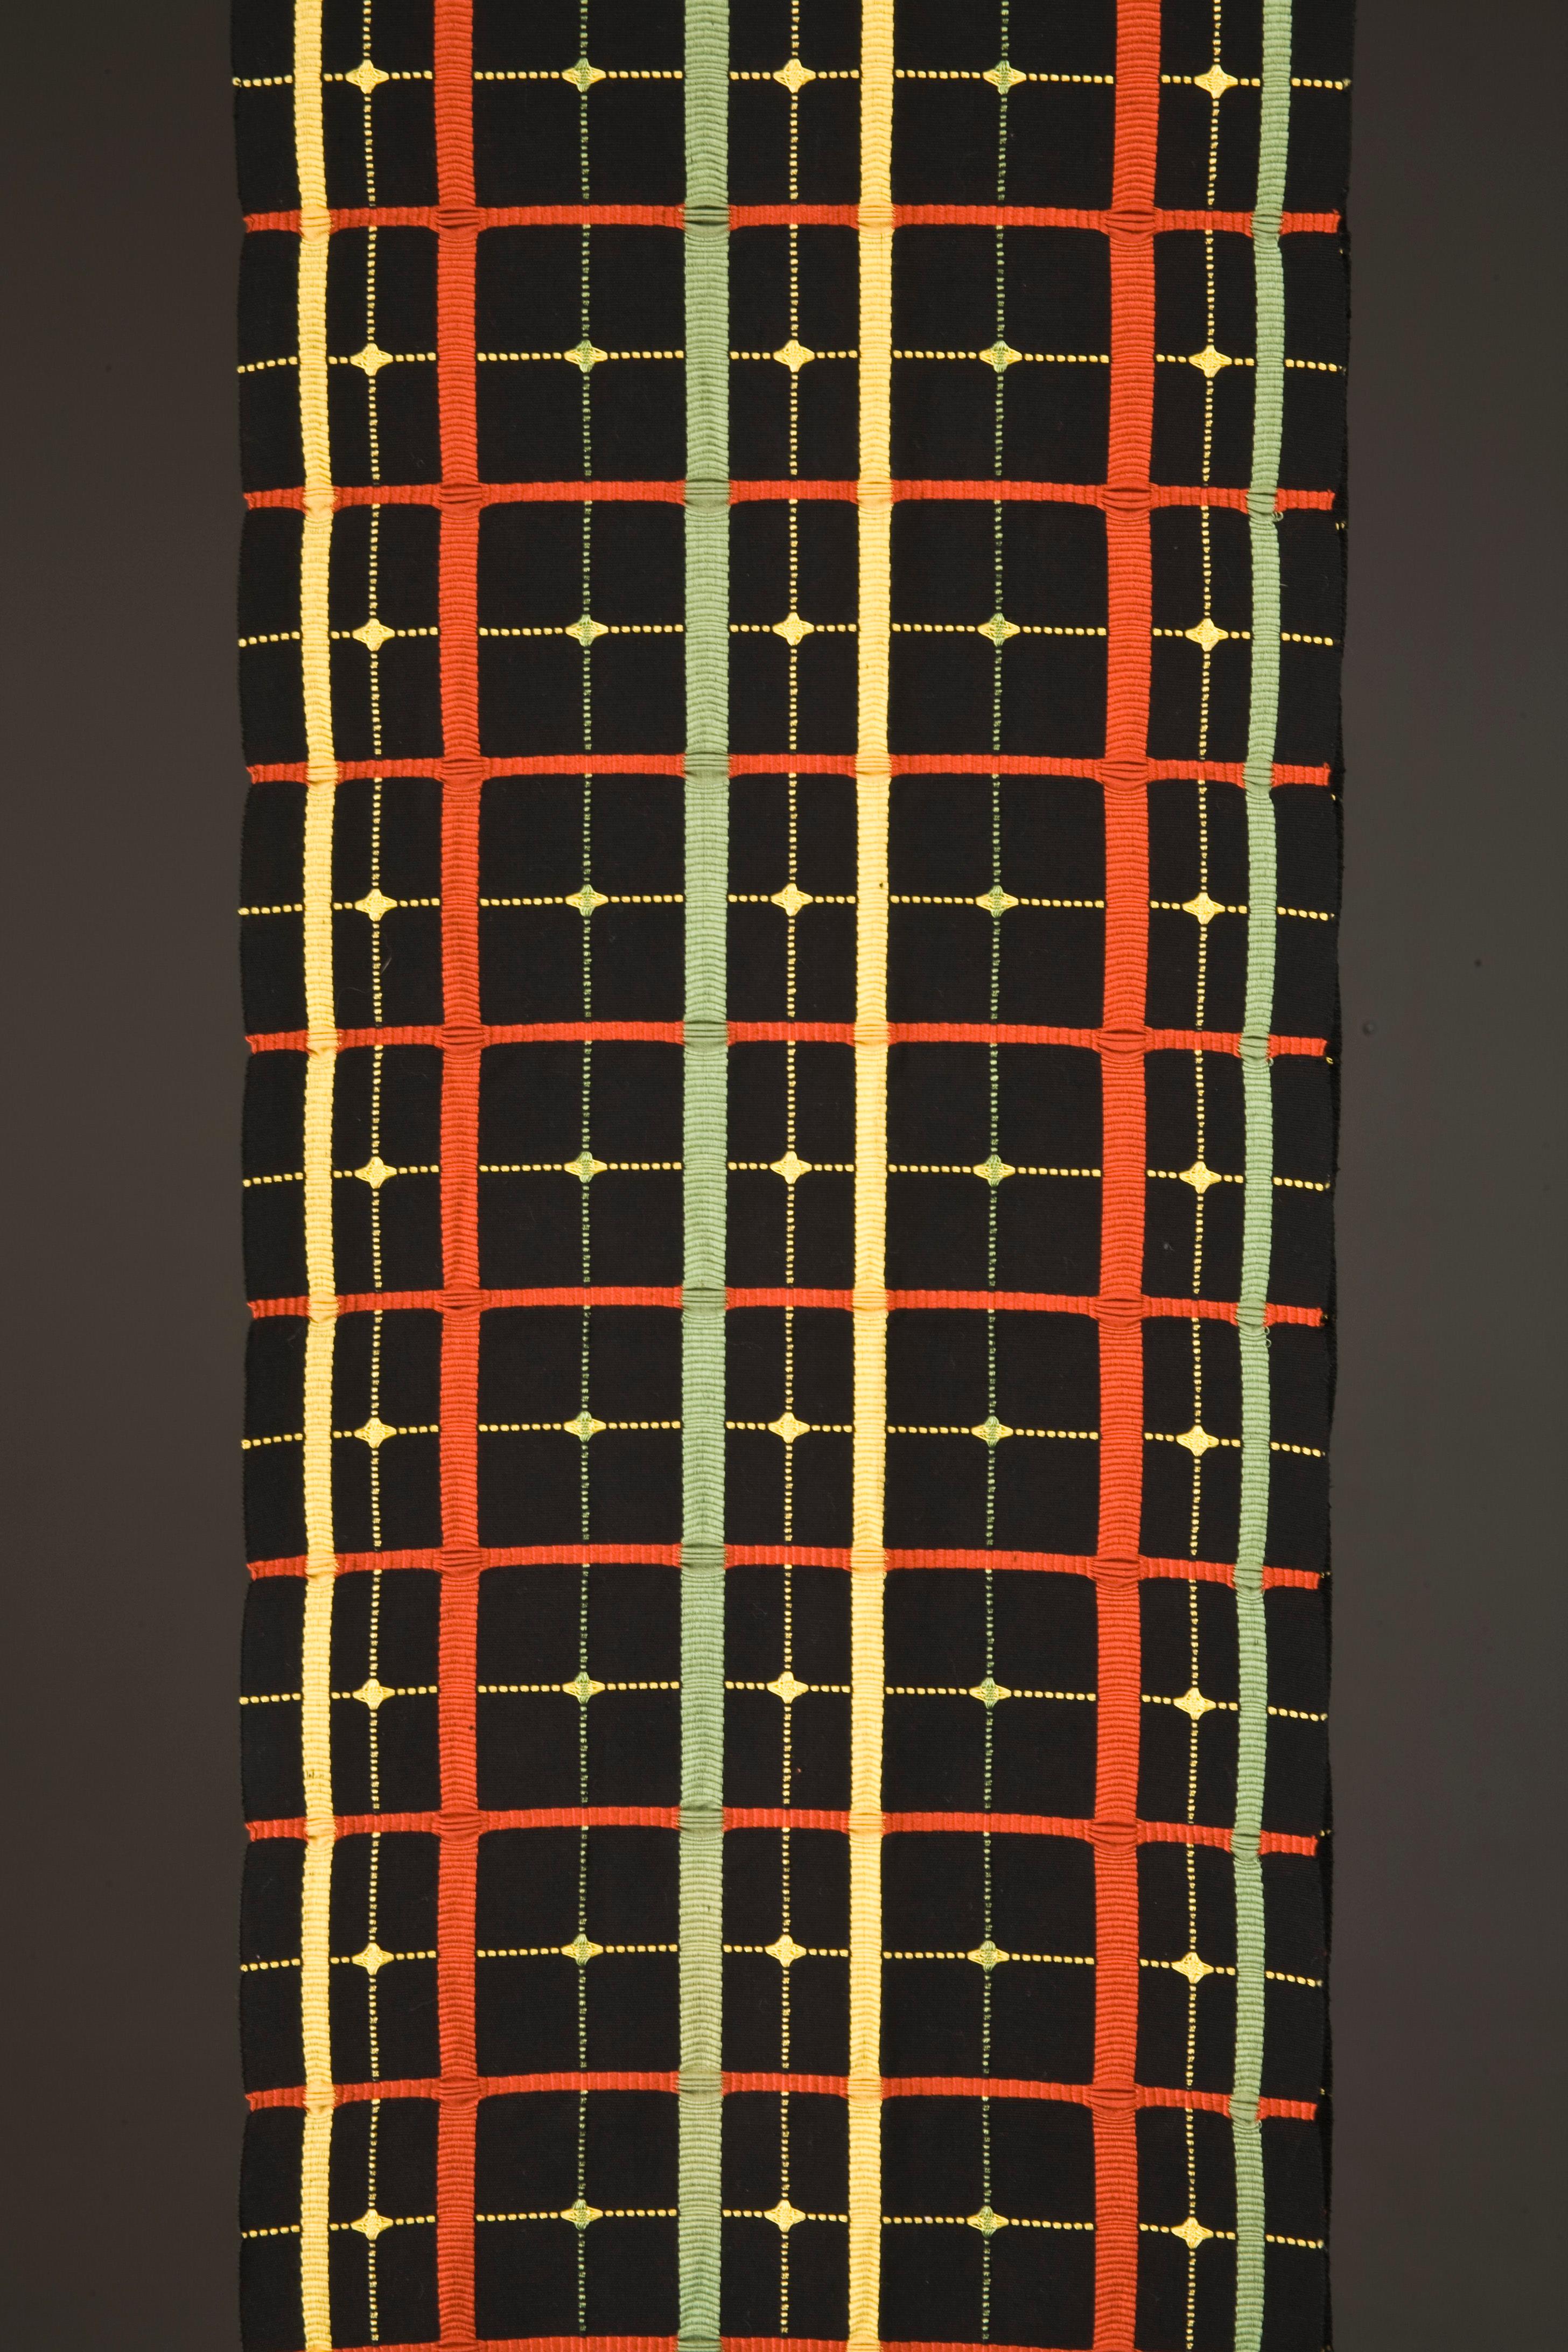 Obi japonais 
Technique de tressage de la soie japonaise Kumihimo
Forme d'art consistant à utiliser des bobines de fil, généralement de la soie, sur un métier à tisser spécialisé
Les dimensions globales de l'Obi sont de 12 pouces de large par 132